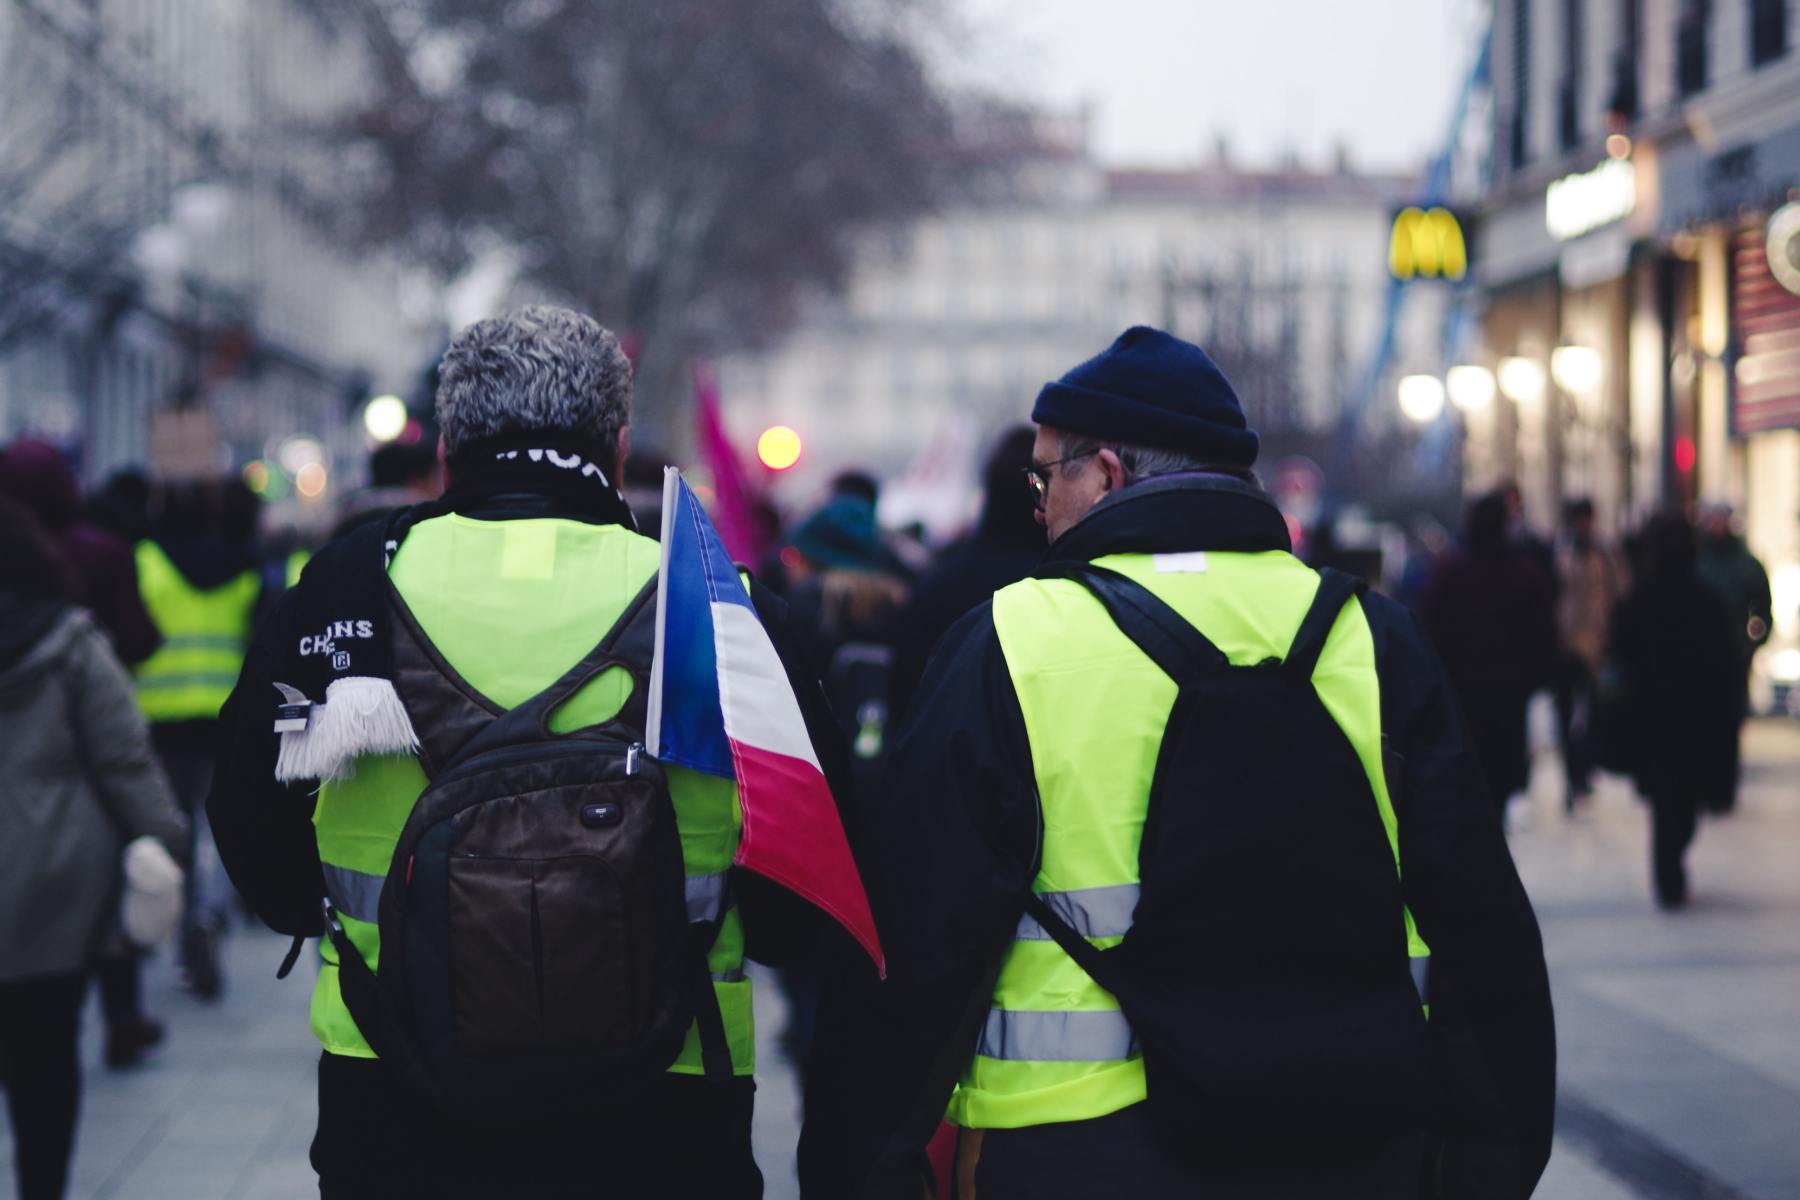 Deux gilets jaunes lors des manifestations en France pour réclamer des mesures sur la justice sociale et la transition écologique.